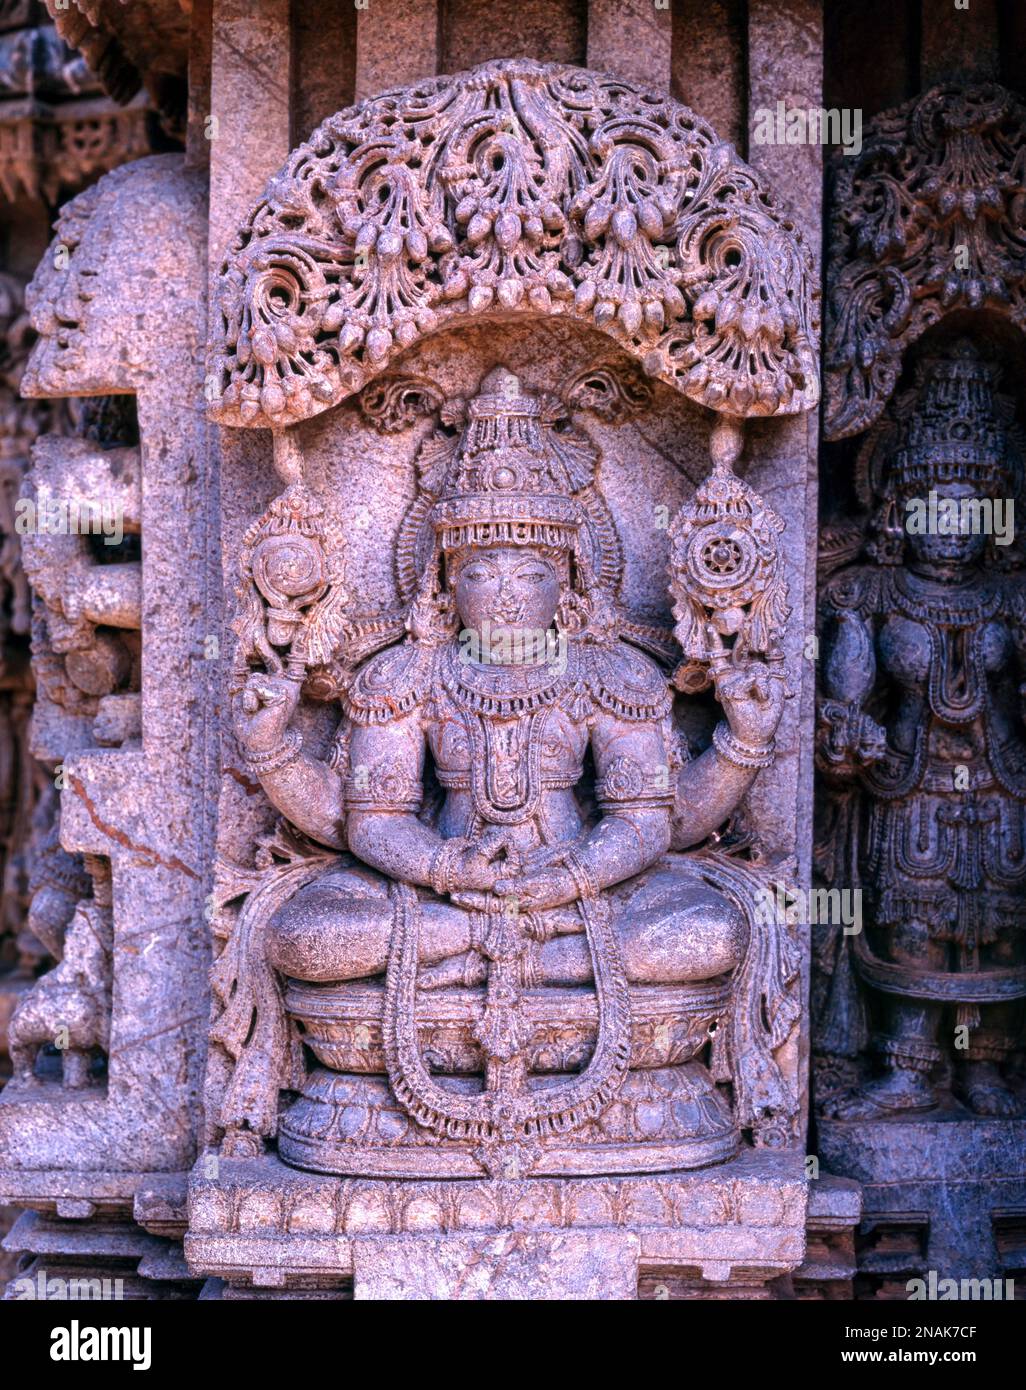 Gros plan de la sculpture en pierre de la danse Lakshmi dans l'architecture Hoysala à Somnathpur, Karnataka, Inde. Gros plan de la sculpture en pierre du yoga Narayana Banque D'Images